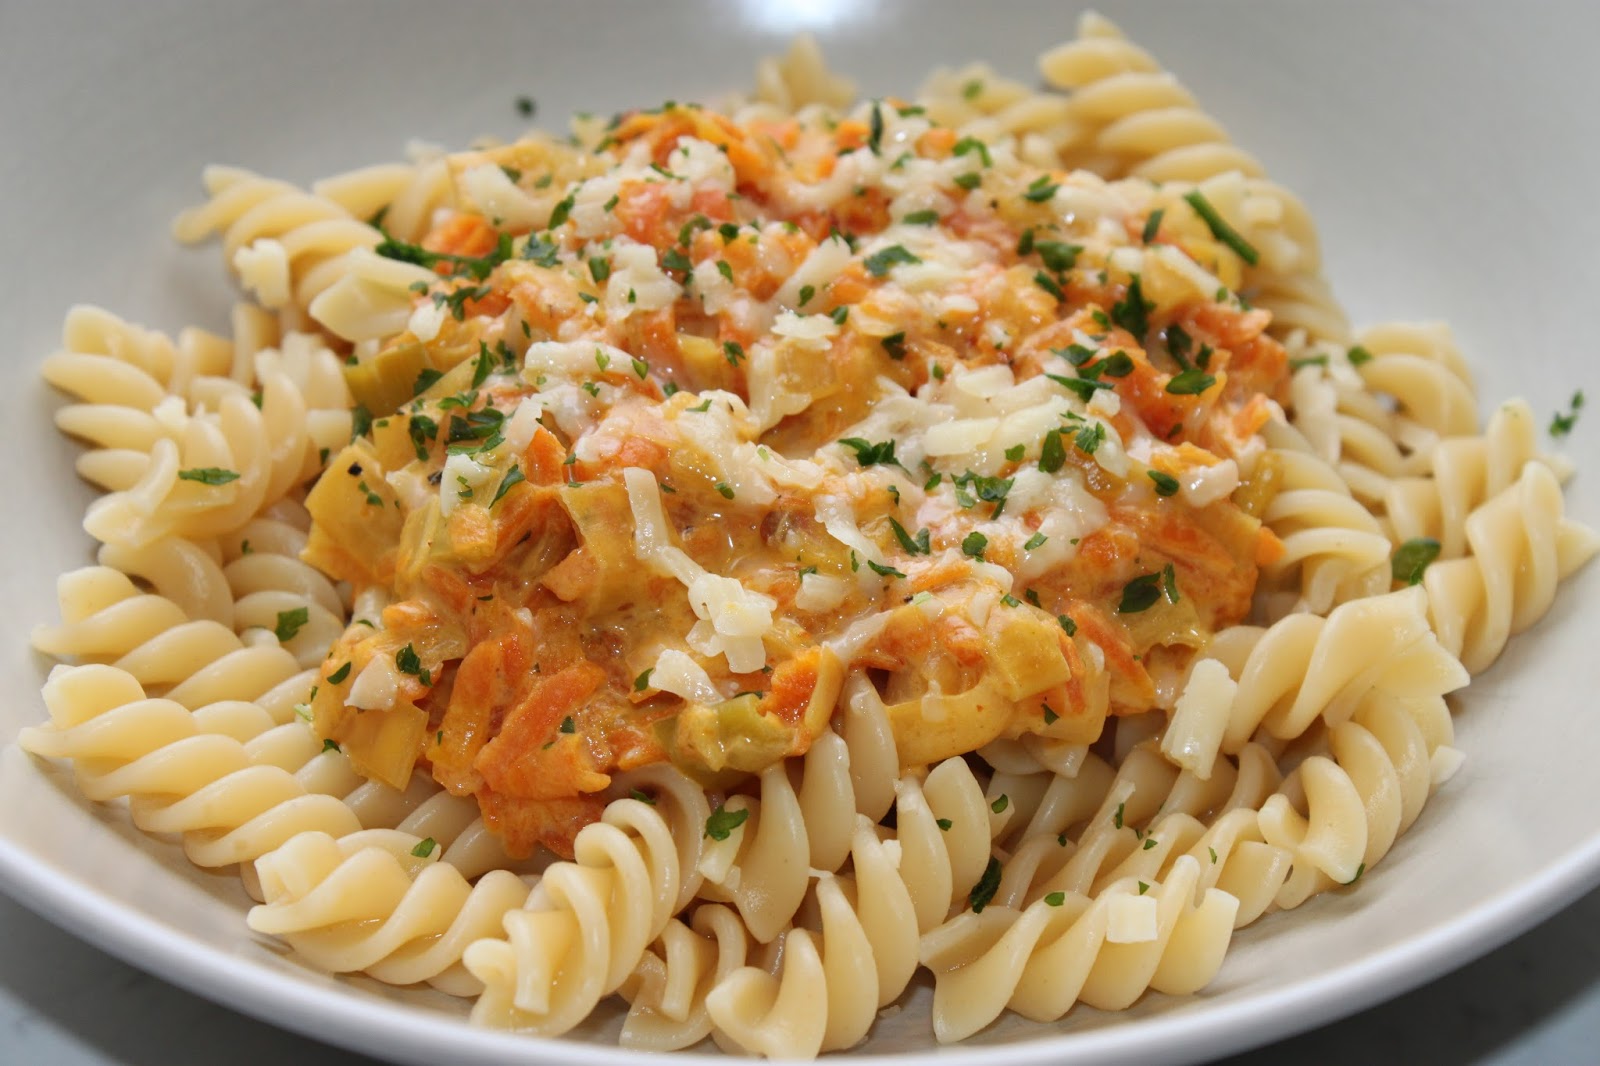 Toves kök - nästan bara vegetariskt: Vegetarisk pastasås med morötter,  purjolök och chipotle